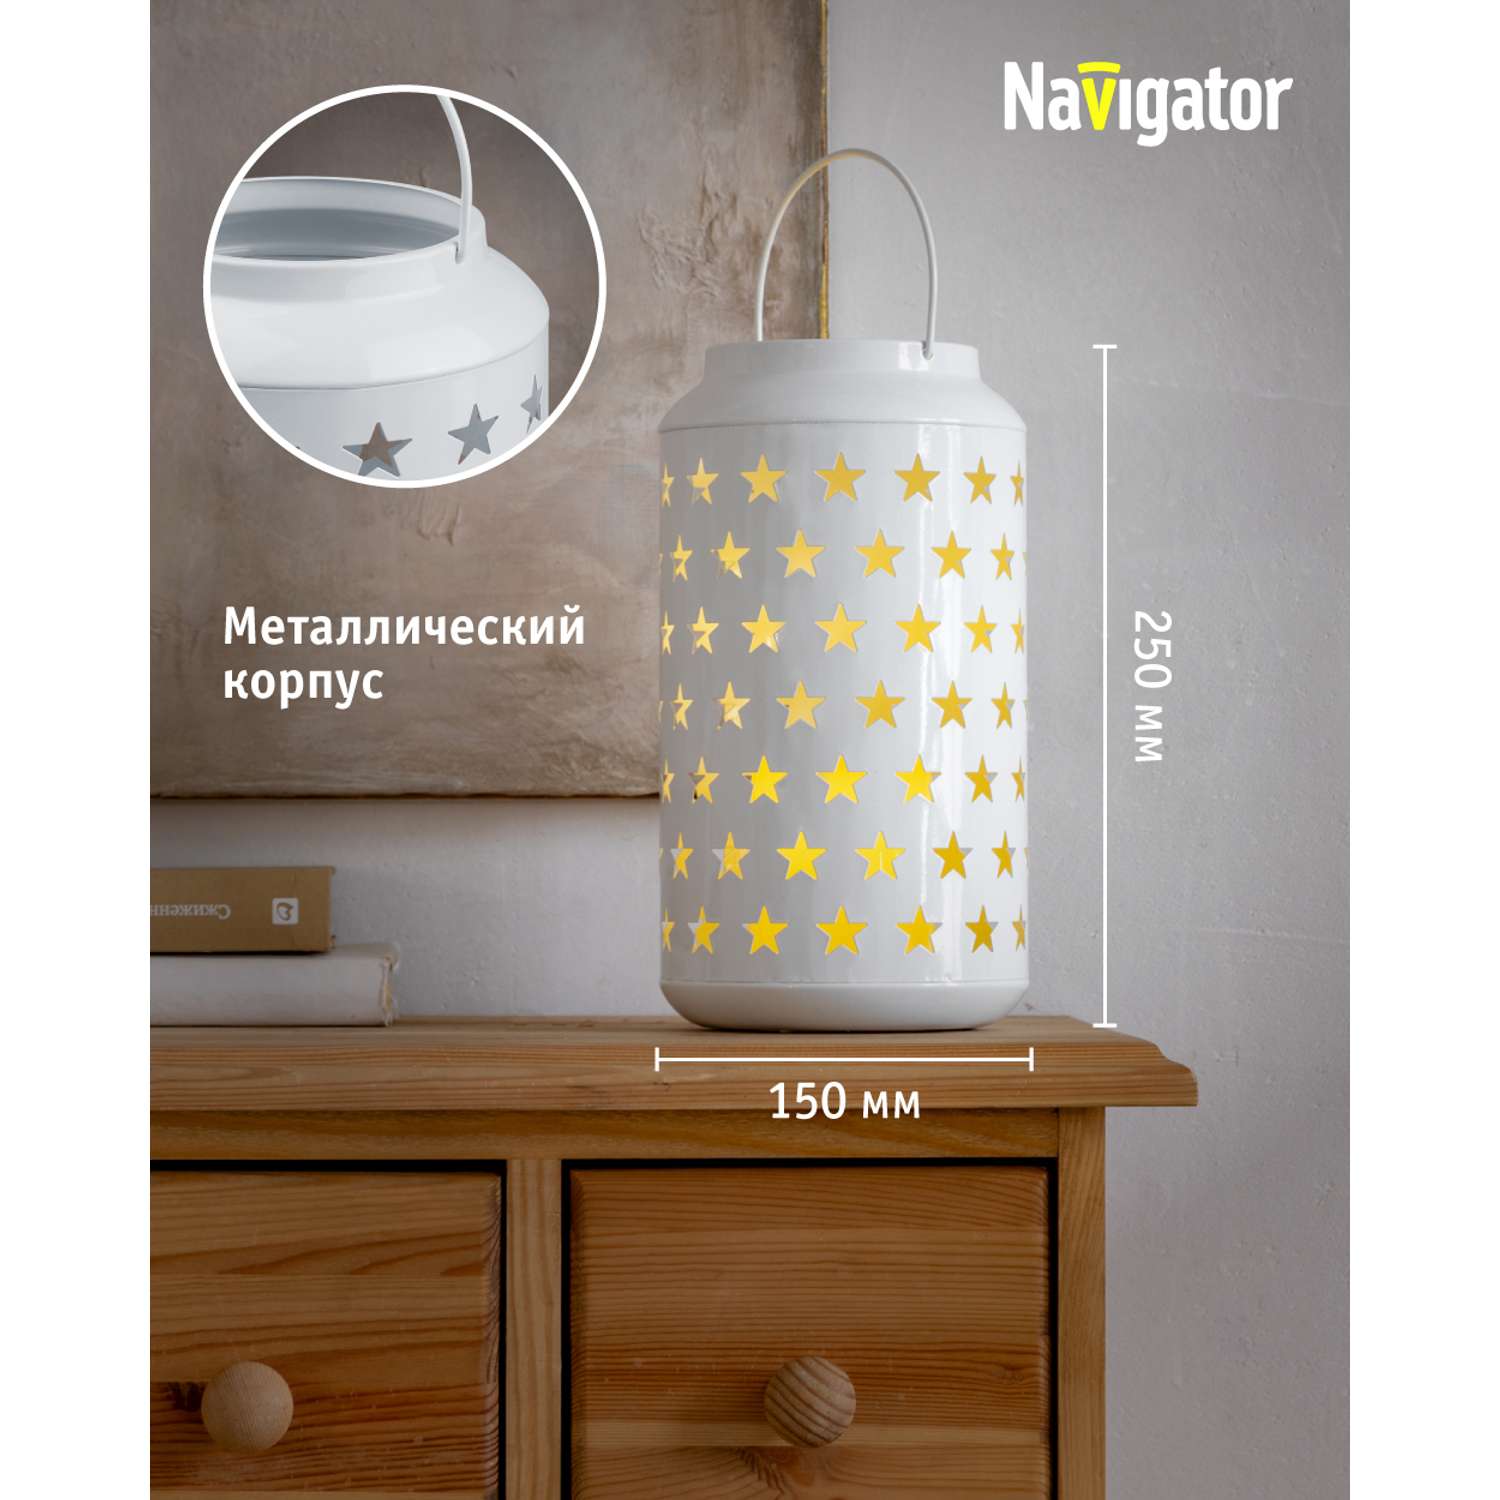 Декоративный светильник-ночник NaVigator светодиодный для детской комнаты узор звезды - фото 3